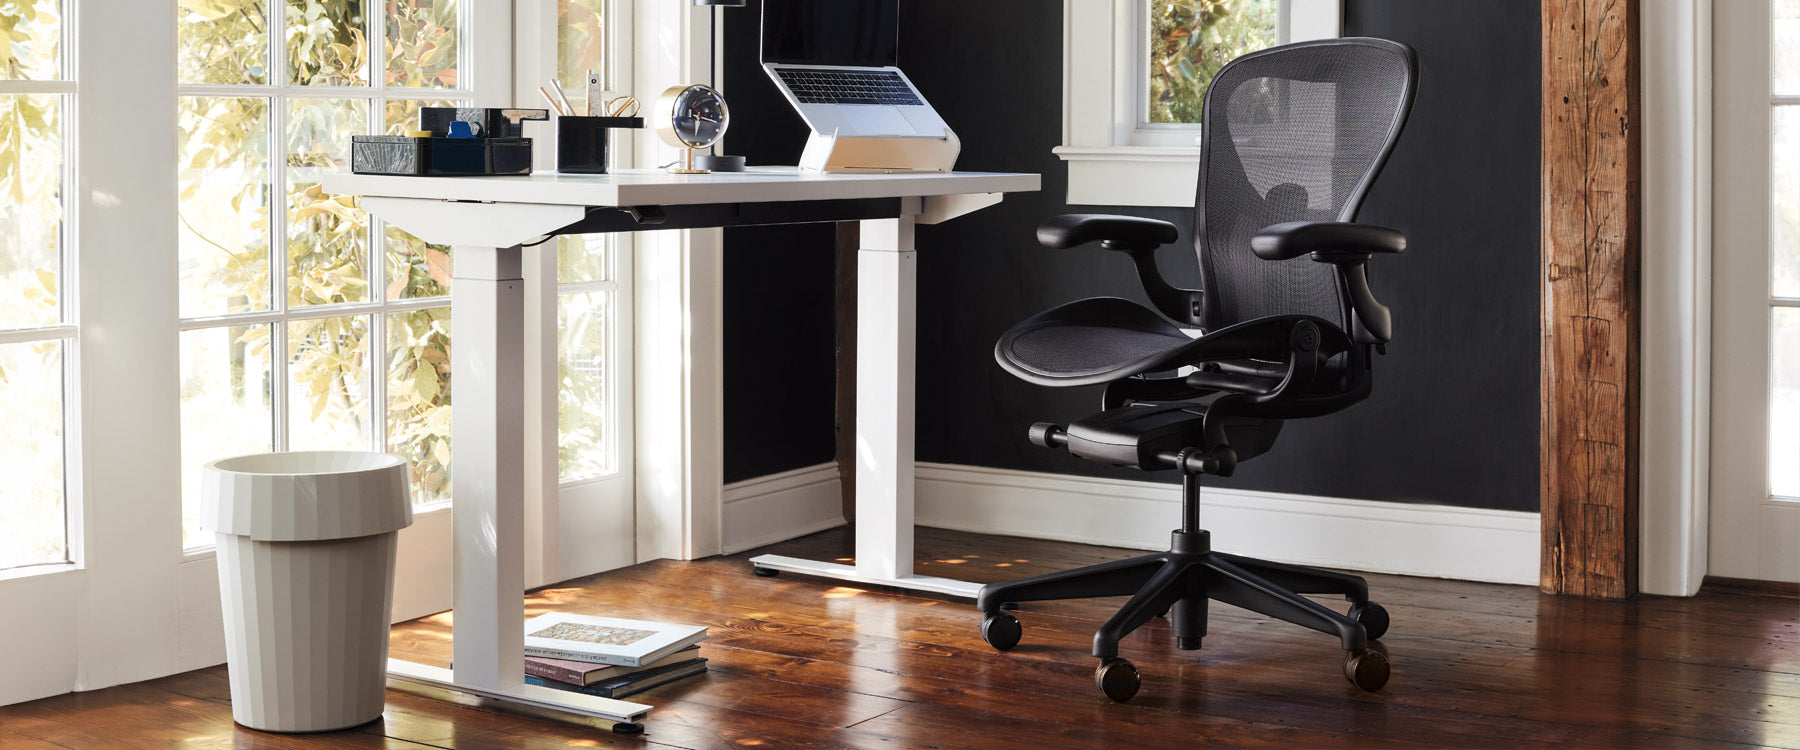 Un bureau à domicile composé d'un Shade Bin de HAY, d'un bureau debout Nevi de Herman Miller et d'une chaise Aeron noire Onyx.